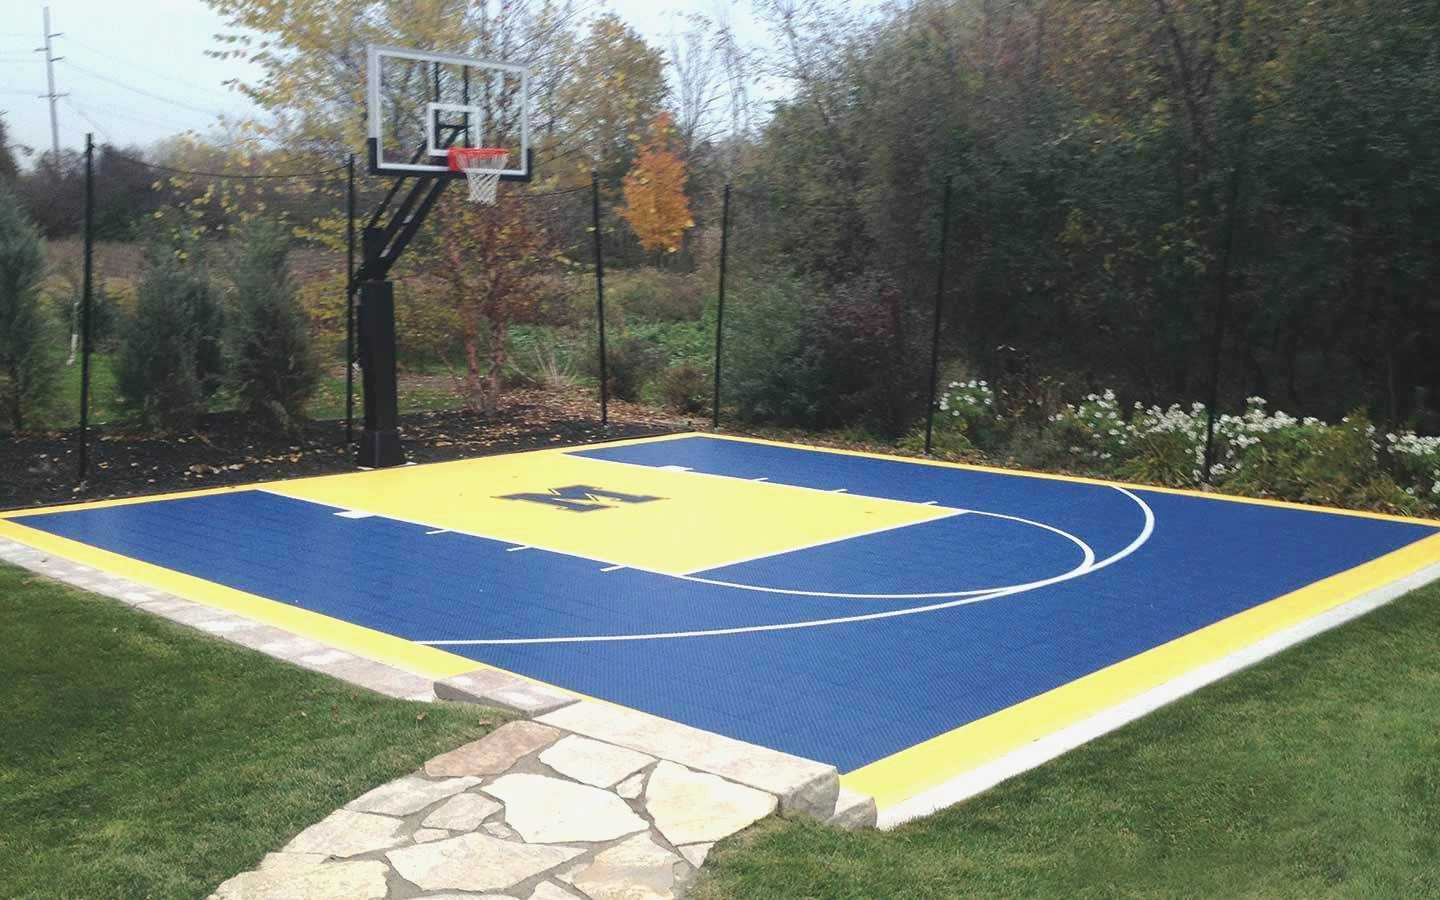 13.backyard basketball court ideas outdoor via SIMPHOME.COM